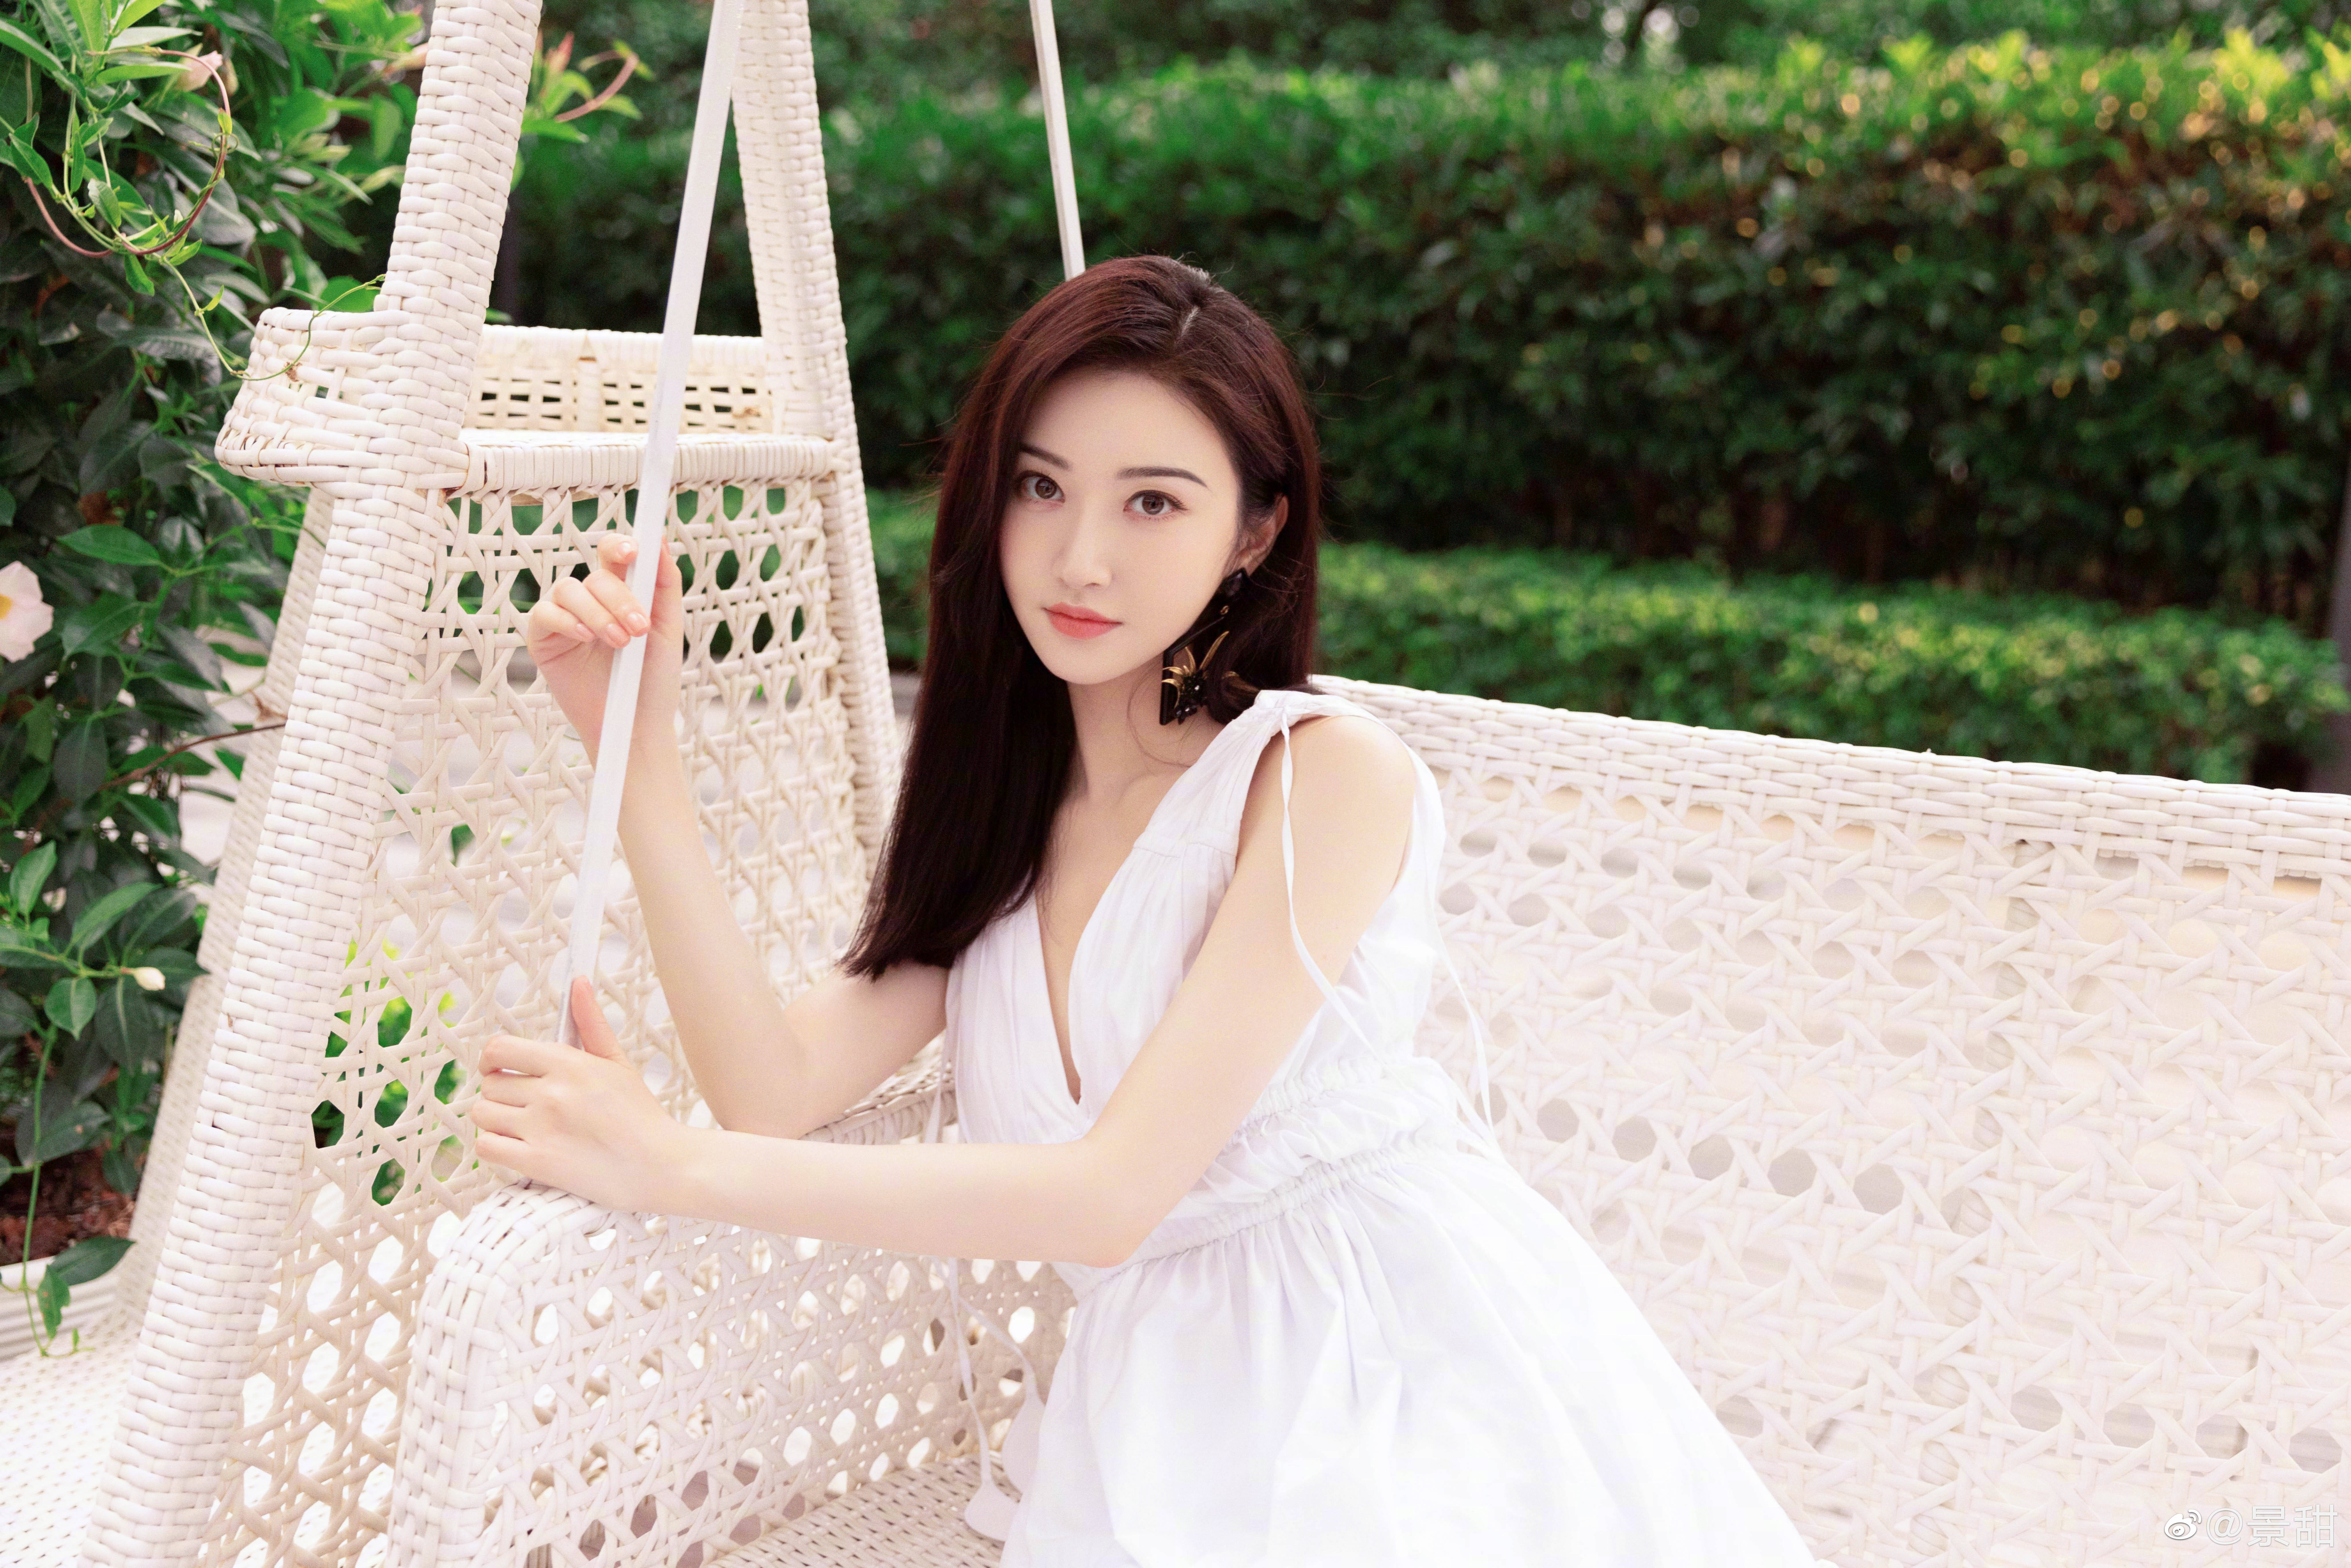 景甜花园大片夏日氛围满满 穿白色连衣裙清新纯净